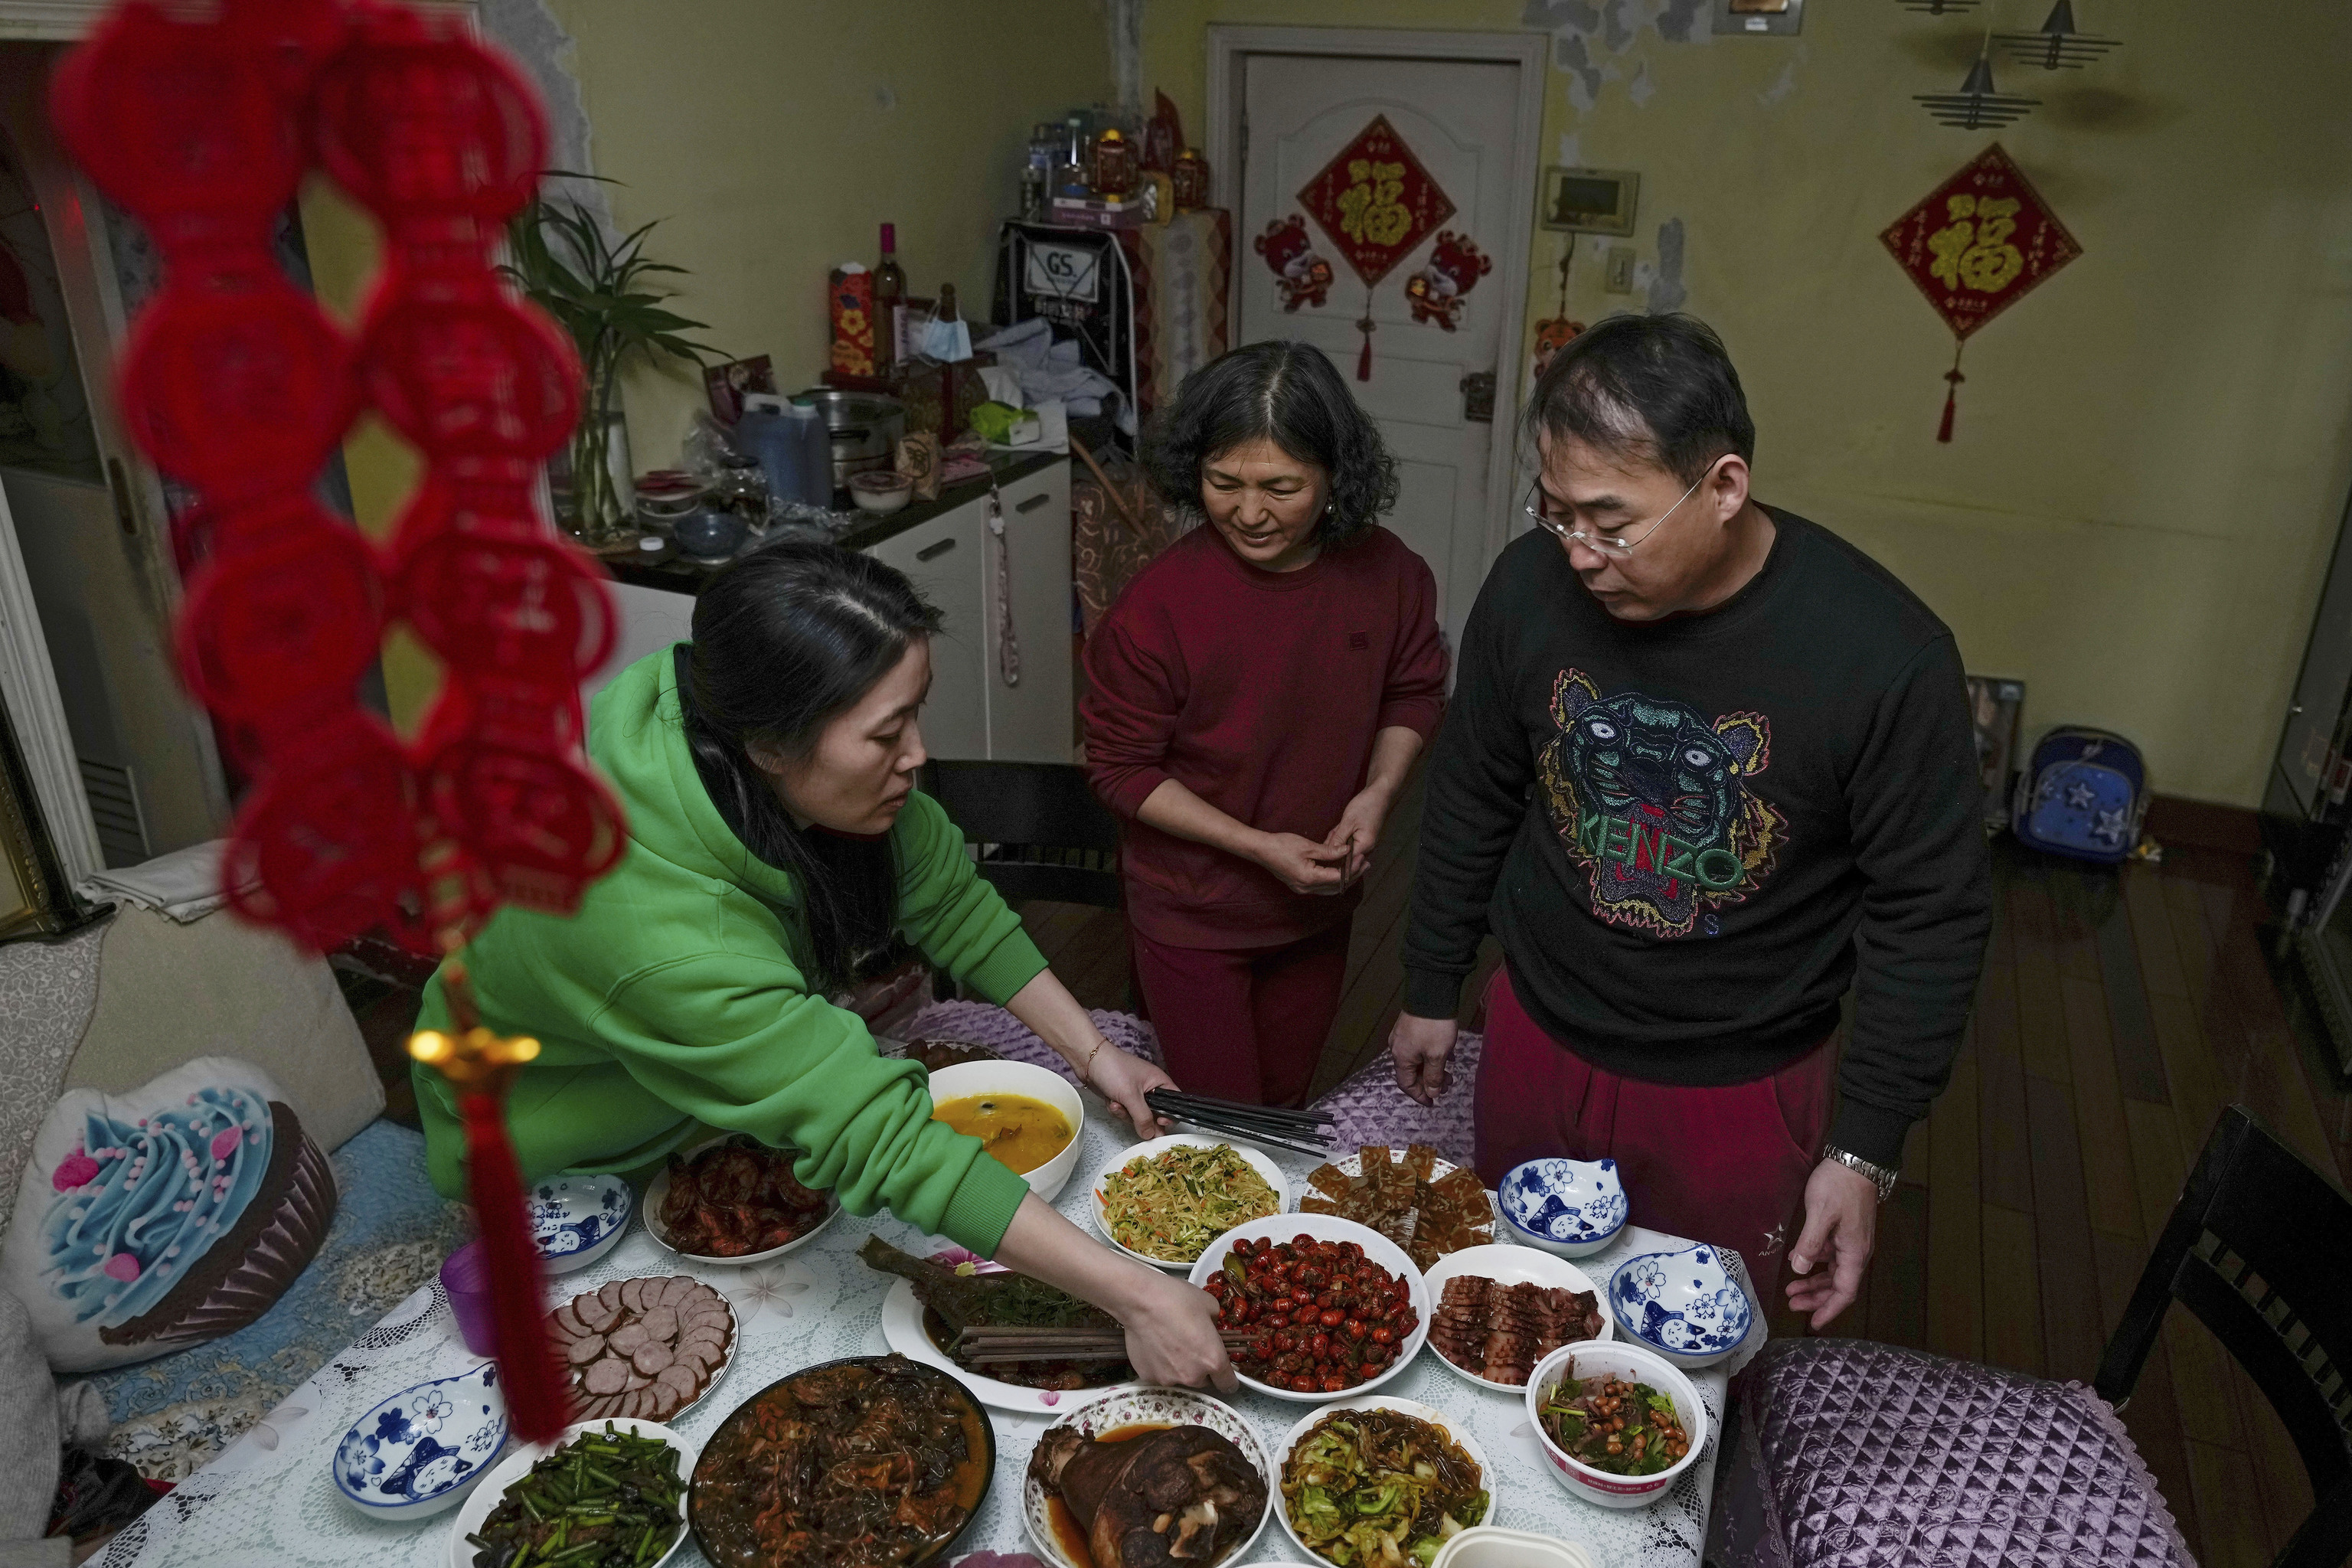 Una pareja prepara la cena para festejar el Ao Nuevo chino con sus amigos.